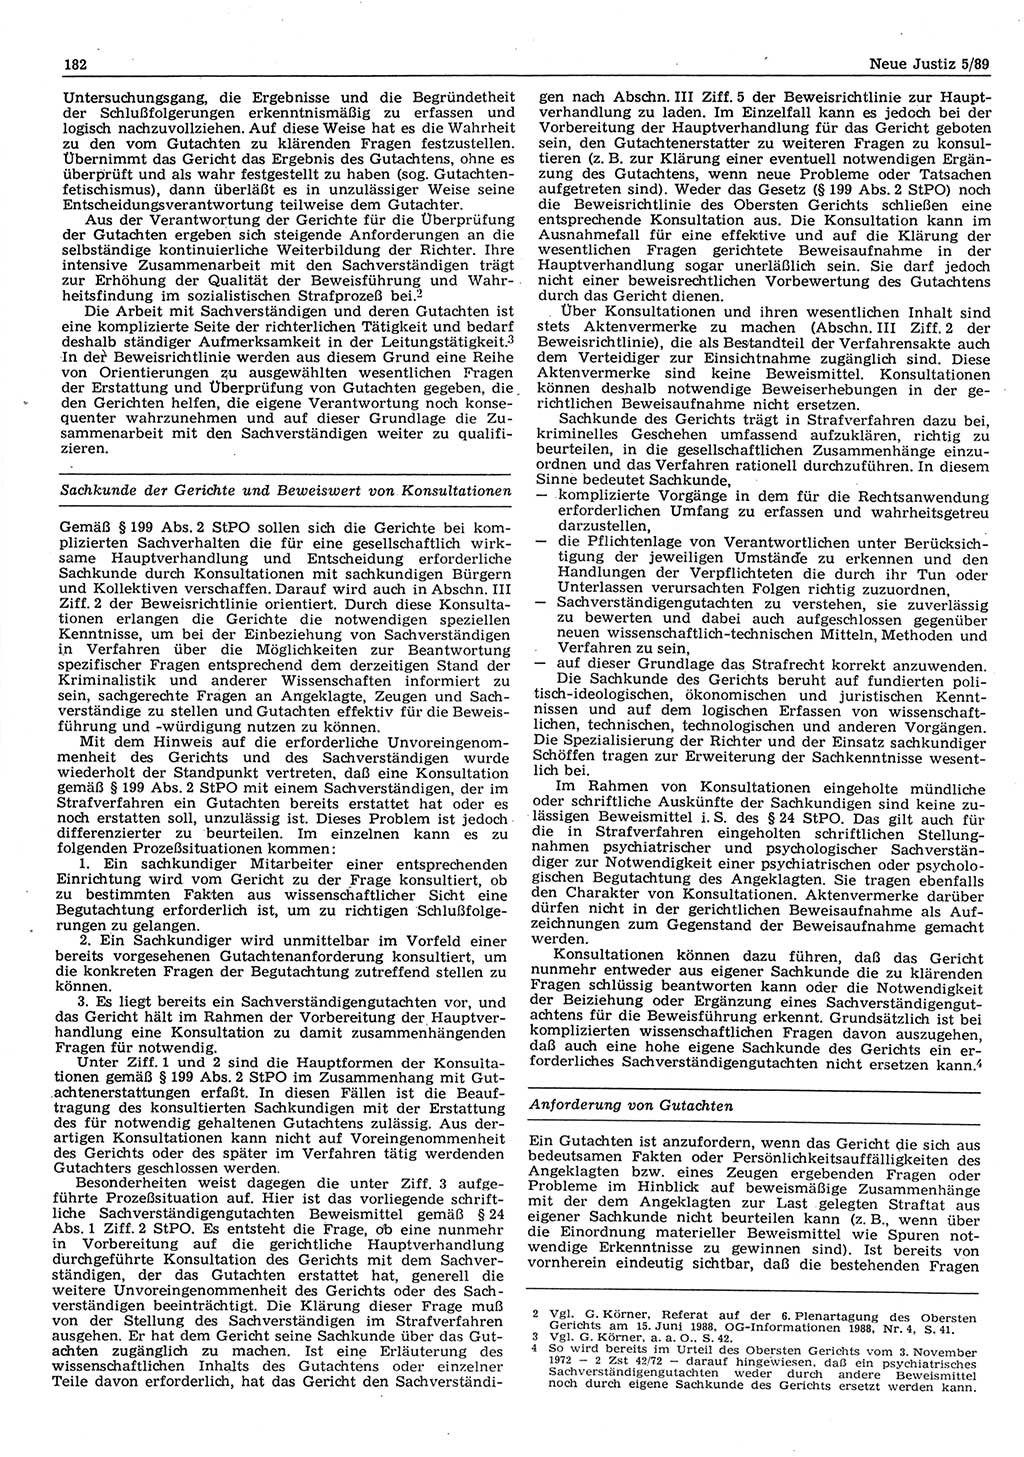 Neue Justiz (NJ), Zeitschrift für sozialistisches Recht und Gesetzlichkeit [Deutsche Demokratische Republik (DDR)], 43. Jahrgang 1989, Seite 182 (NJ DDR 1989, S. 182)